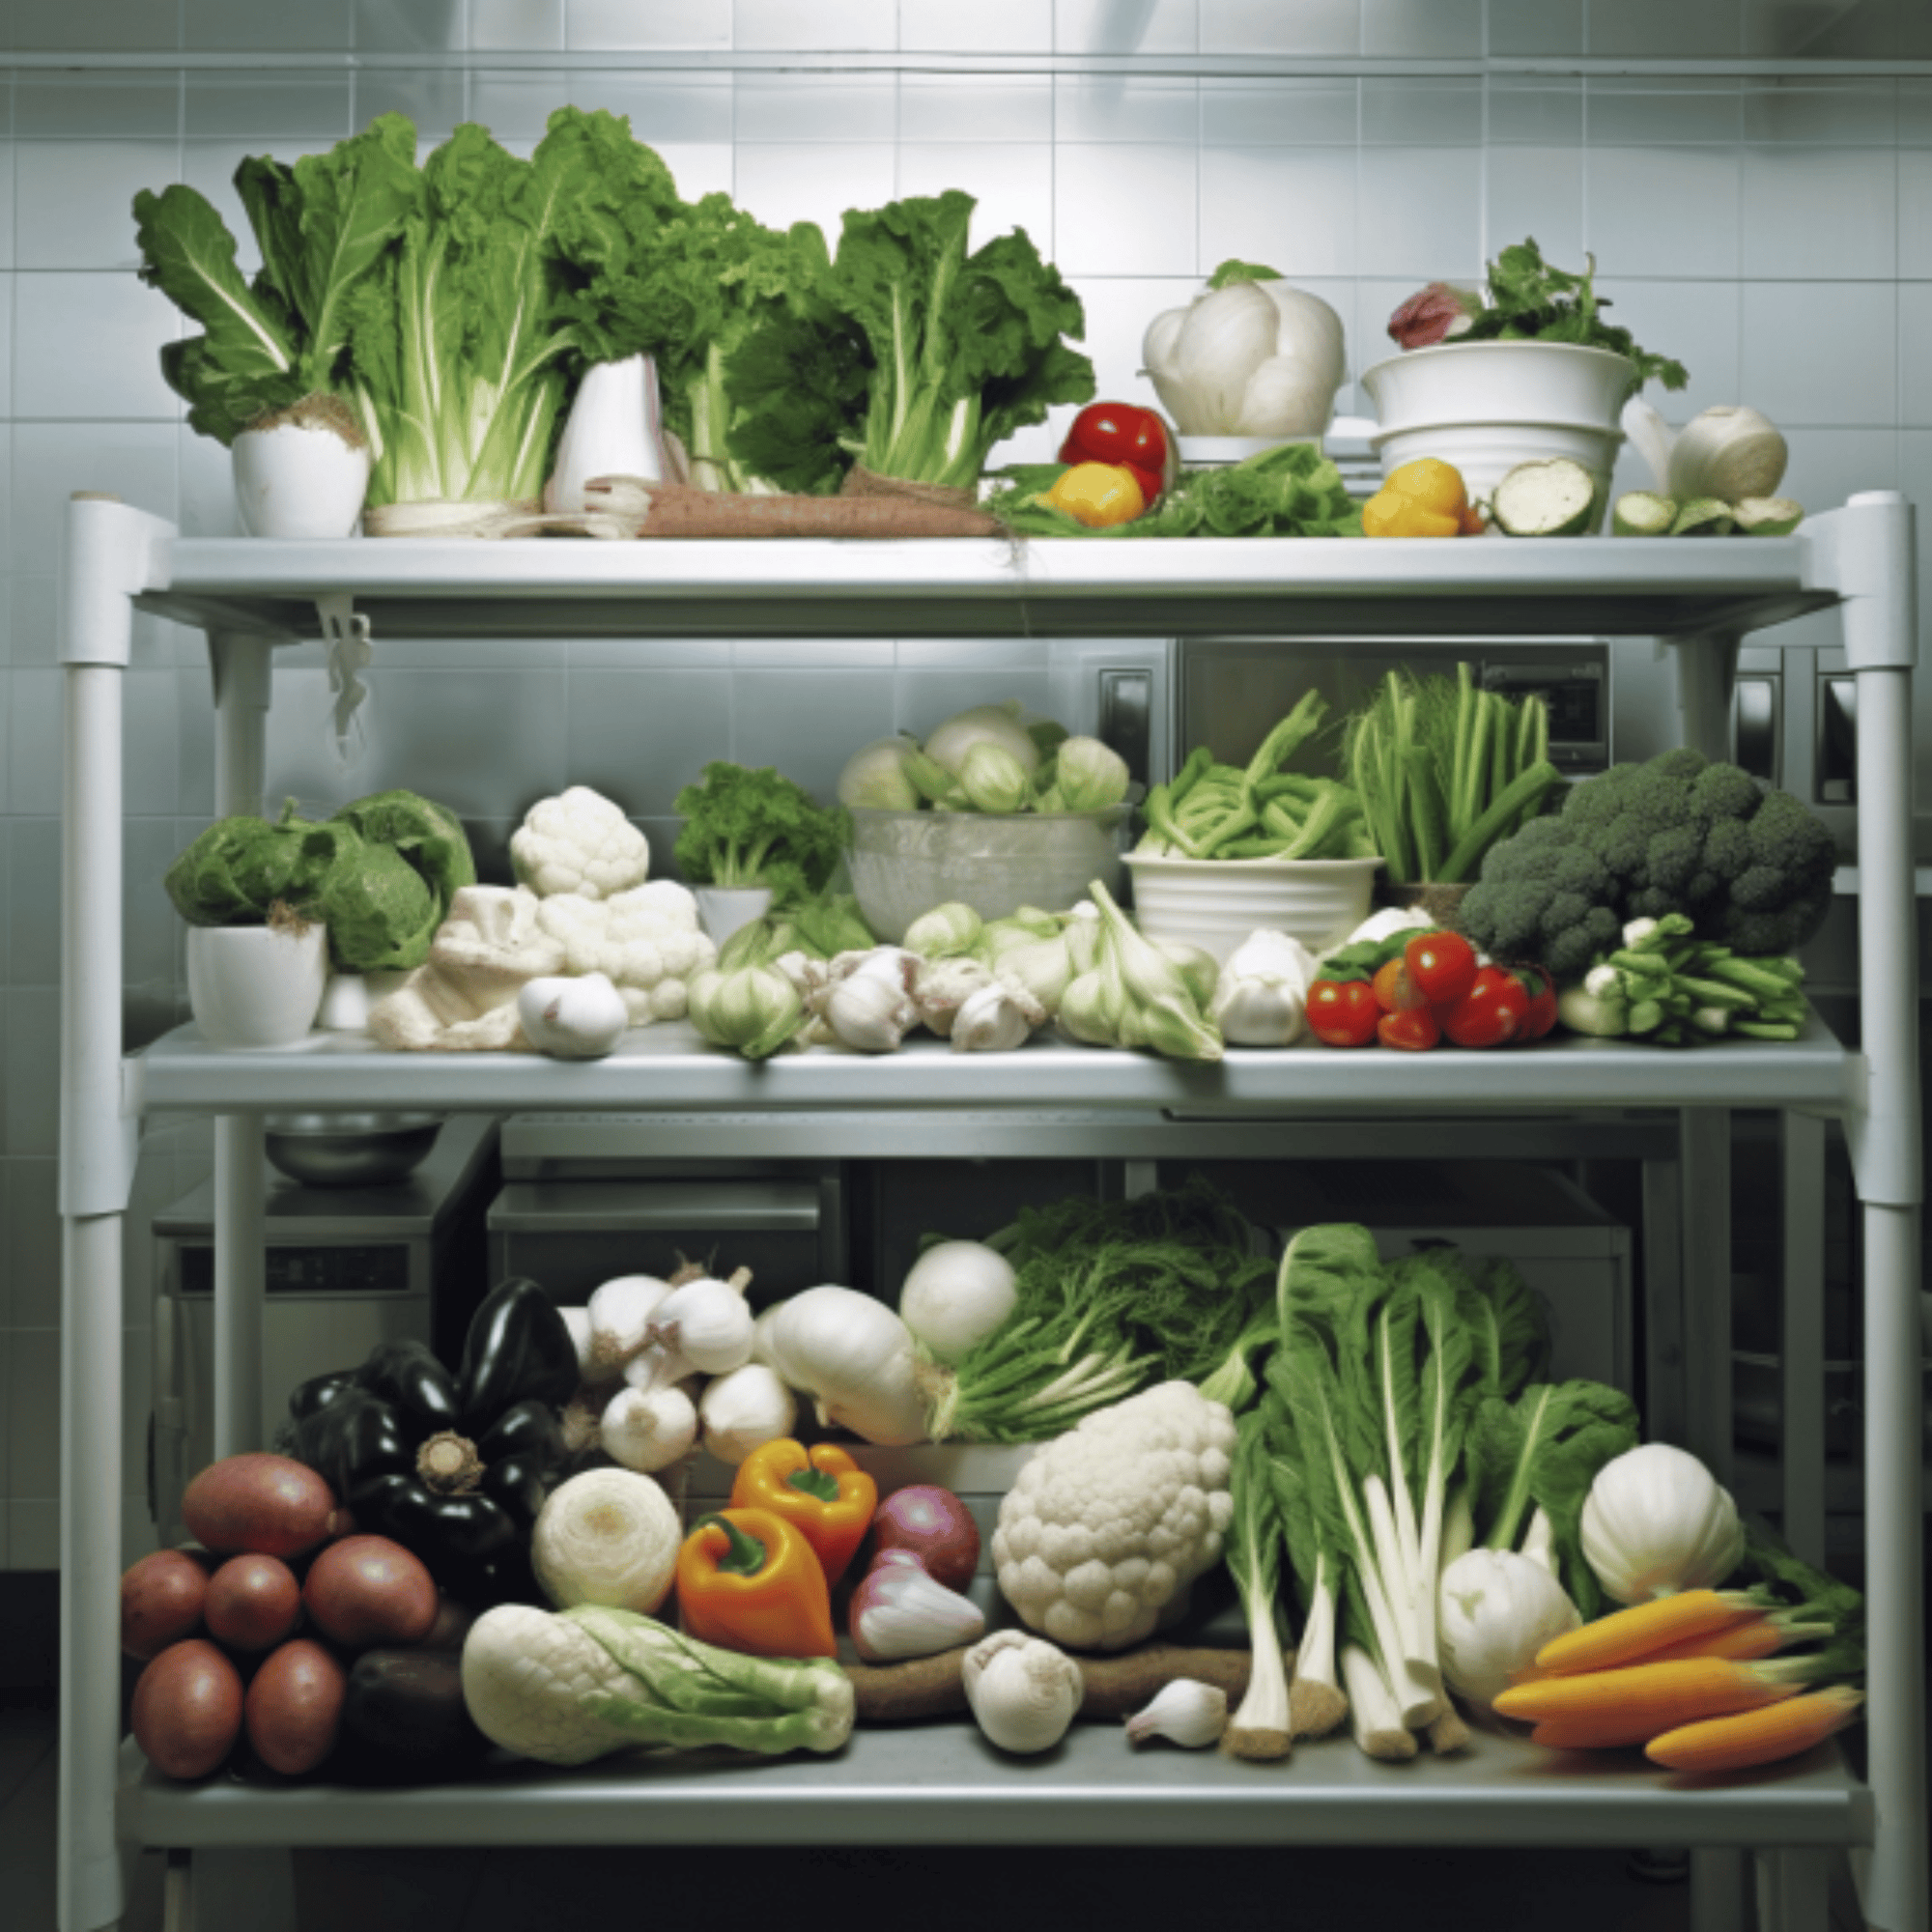 healthy foods in the fridge